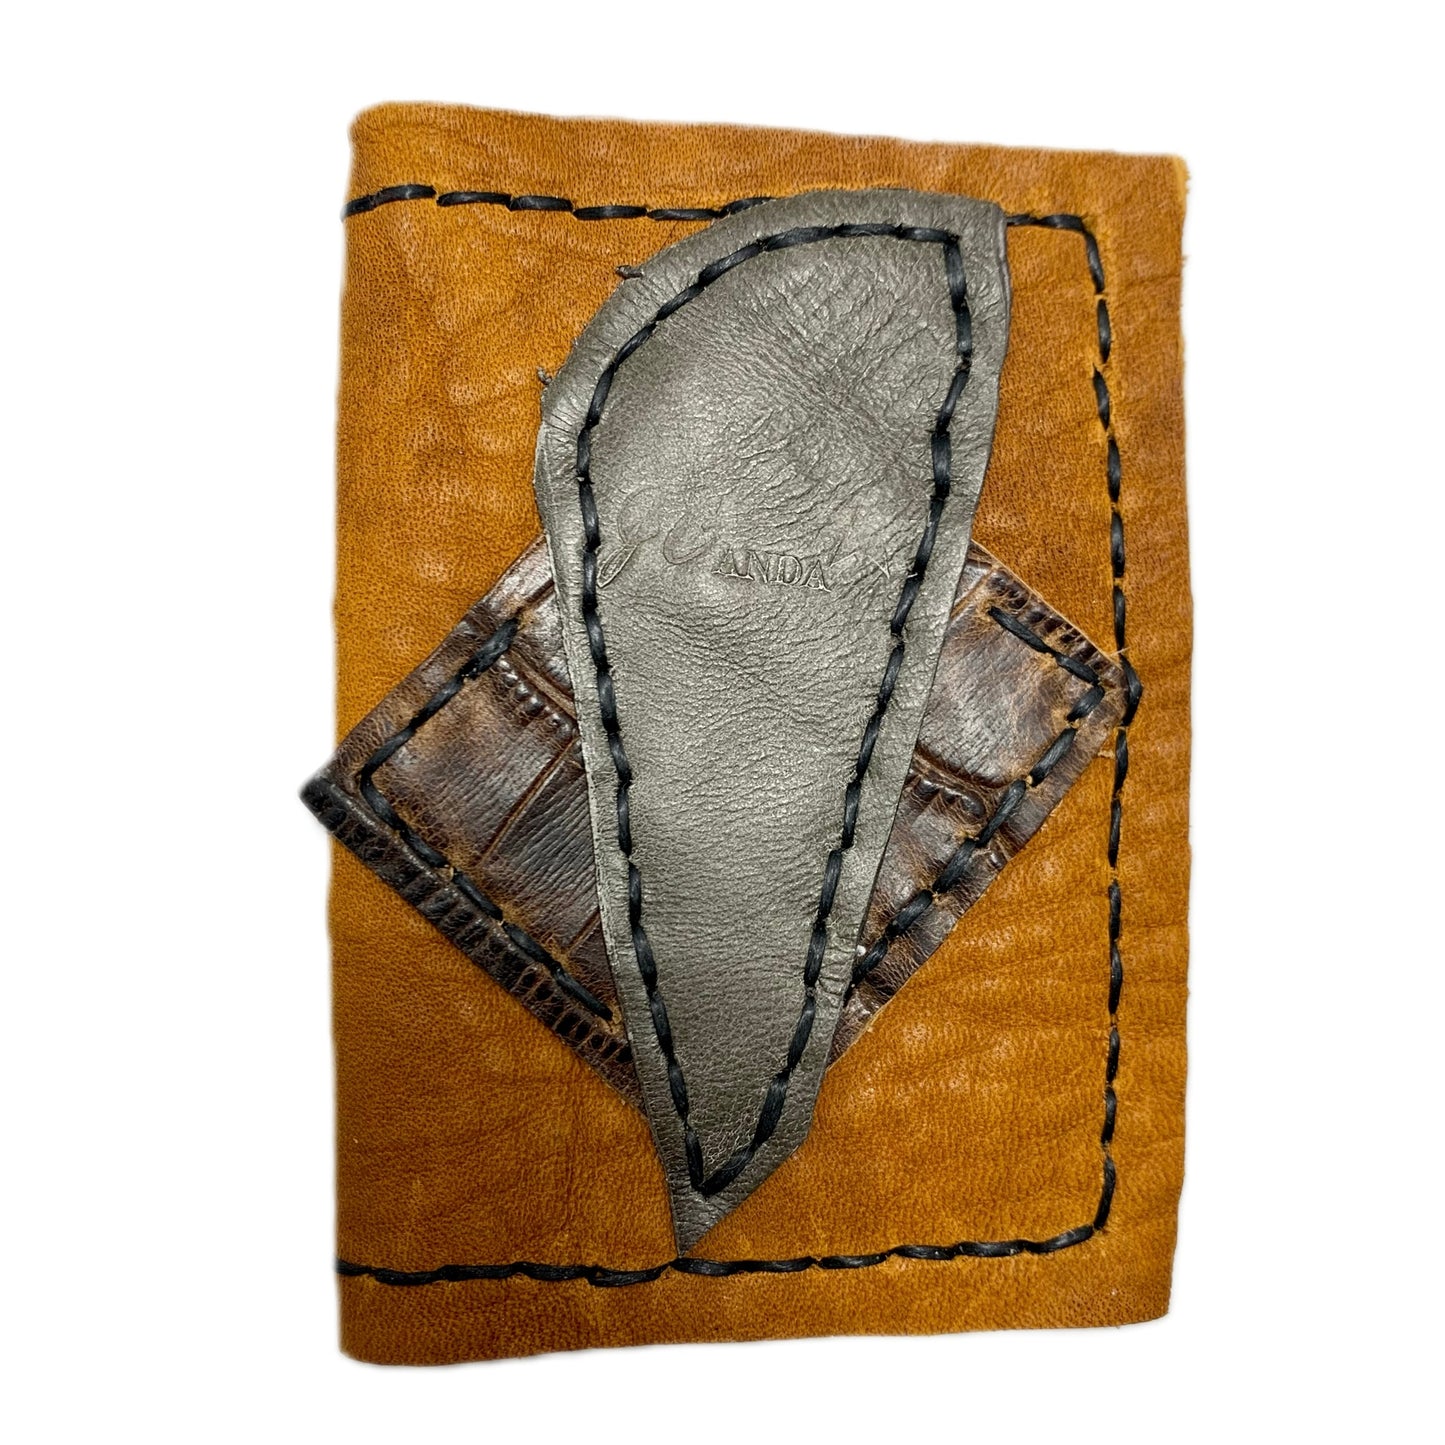 JCAnda Leather Wallet: Delight